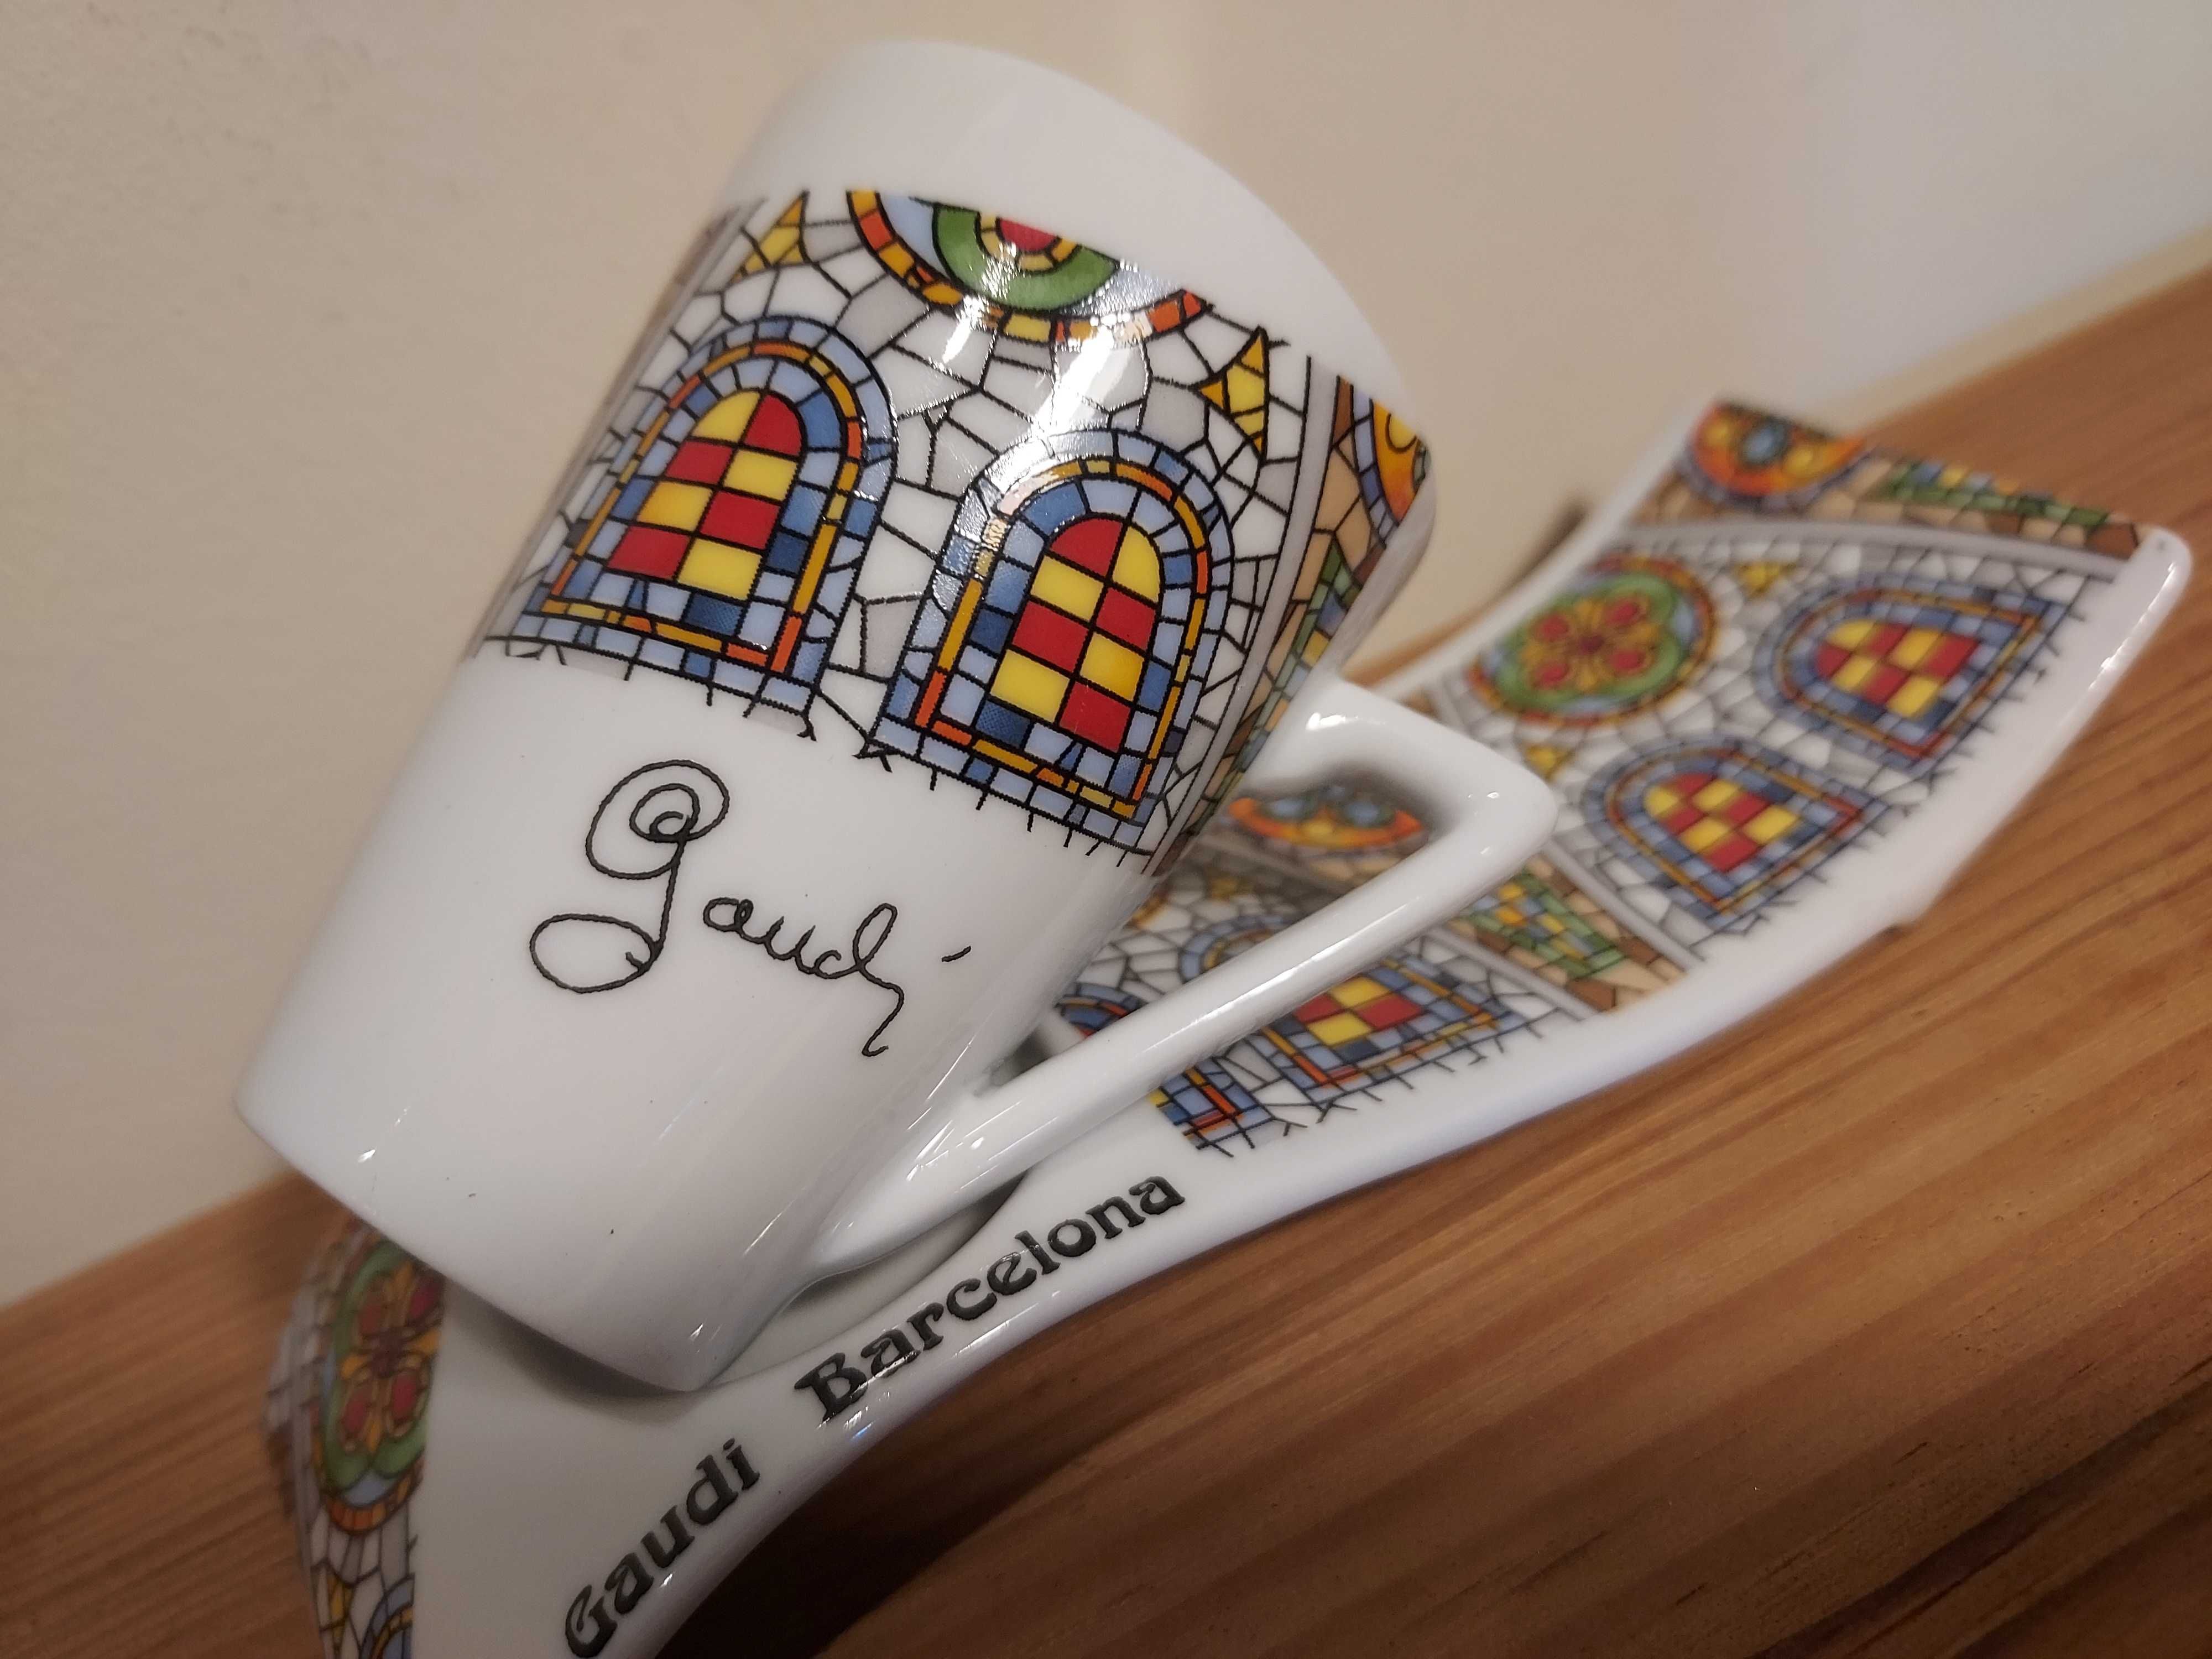 Chávena e pires de café alusivos a Gaudi